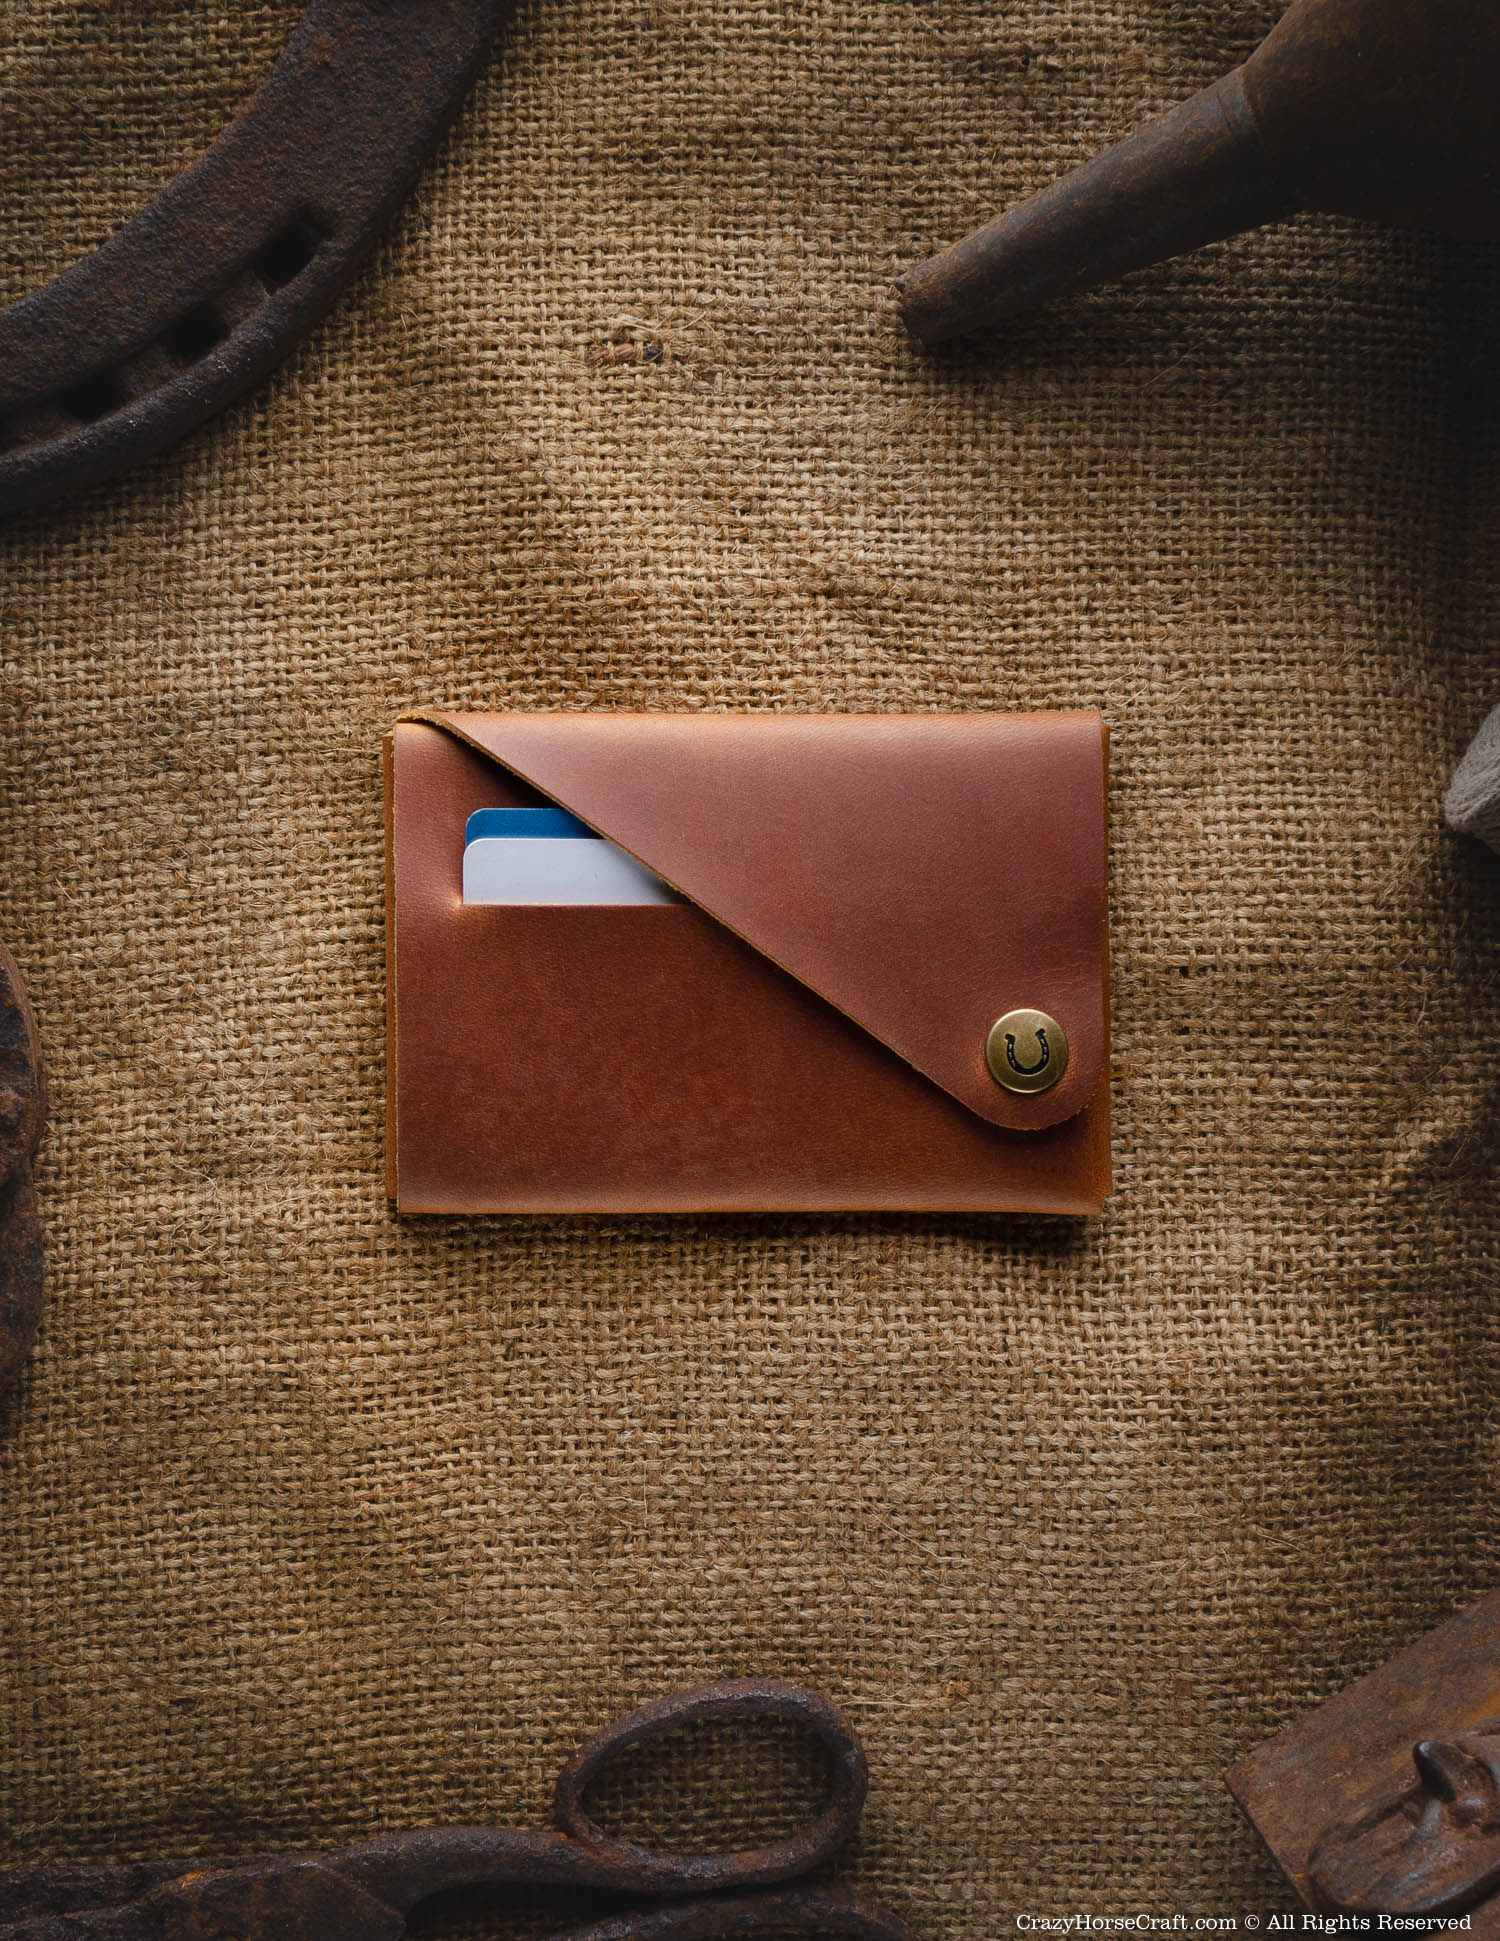 Slim Wallet Genuine Leather Credit Card Holder Unisex 6 Card 